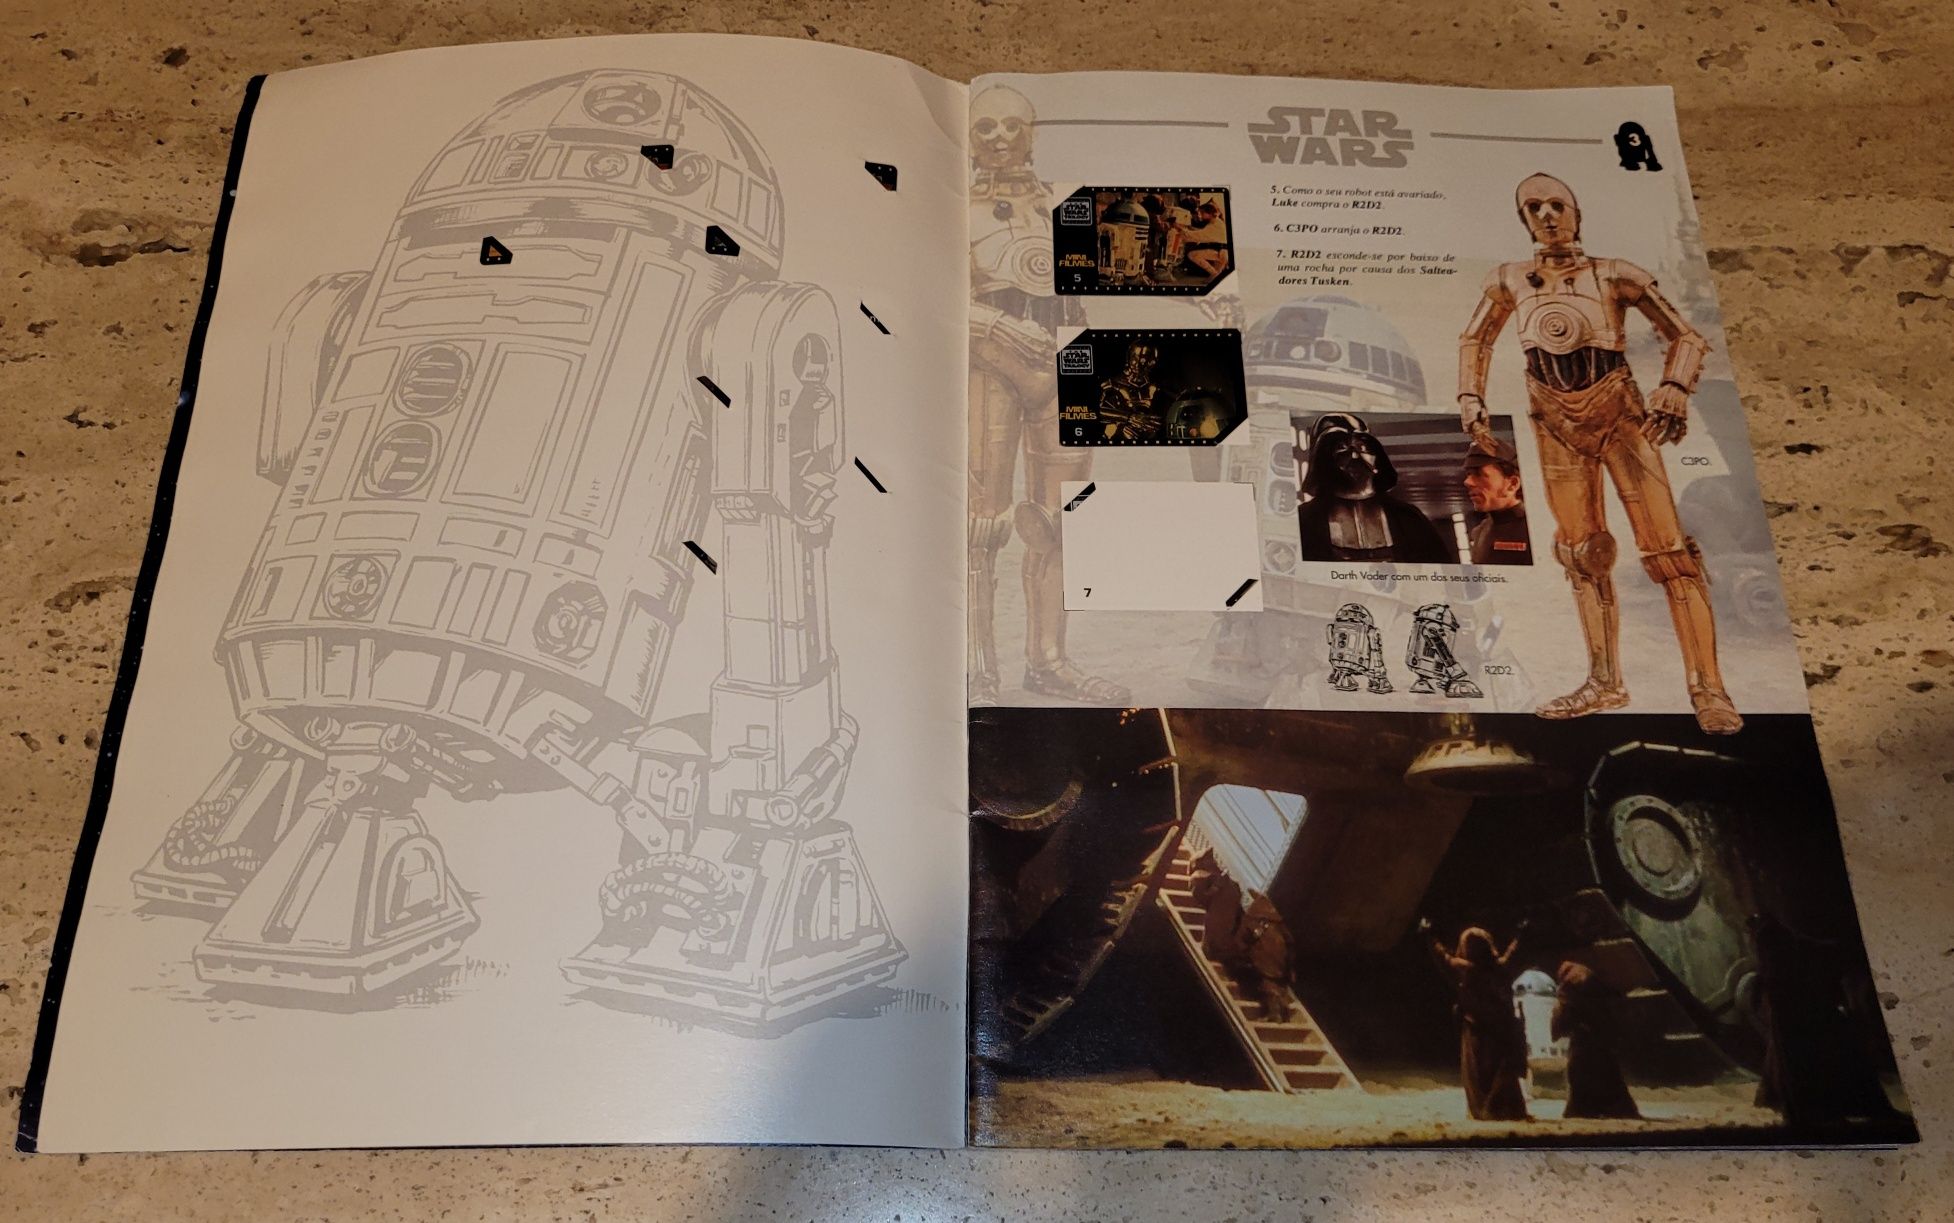 Caderneta Star Wars Matutano 1996 e slides mini filmes